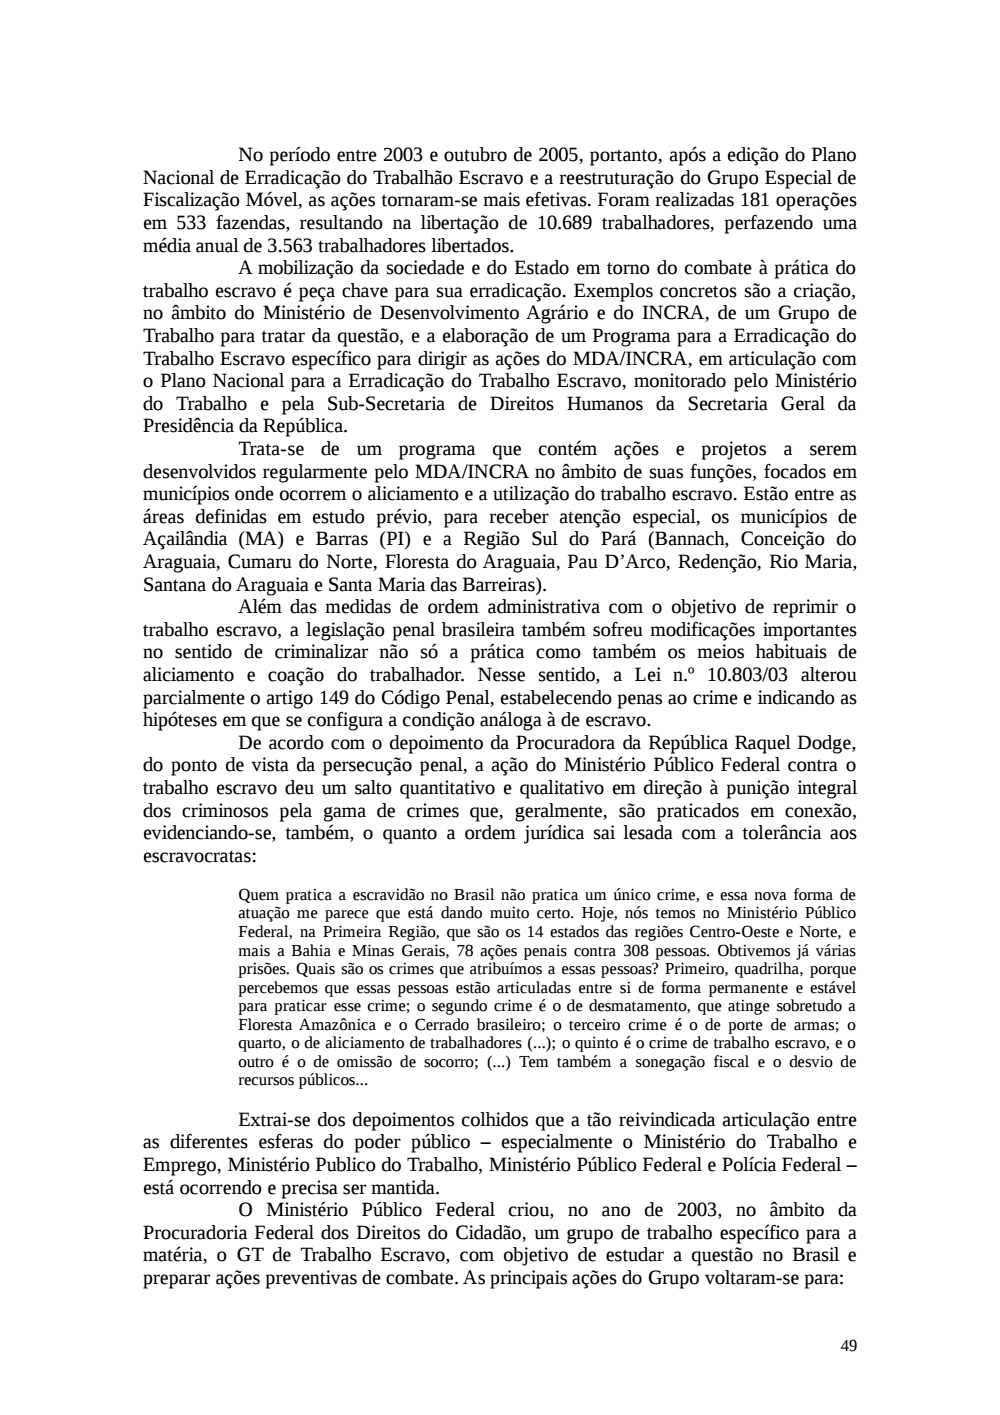 Page 49 from Relatório final da comissão